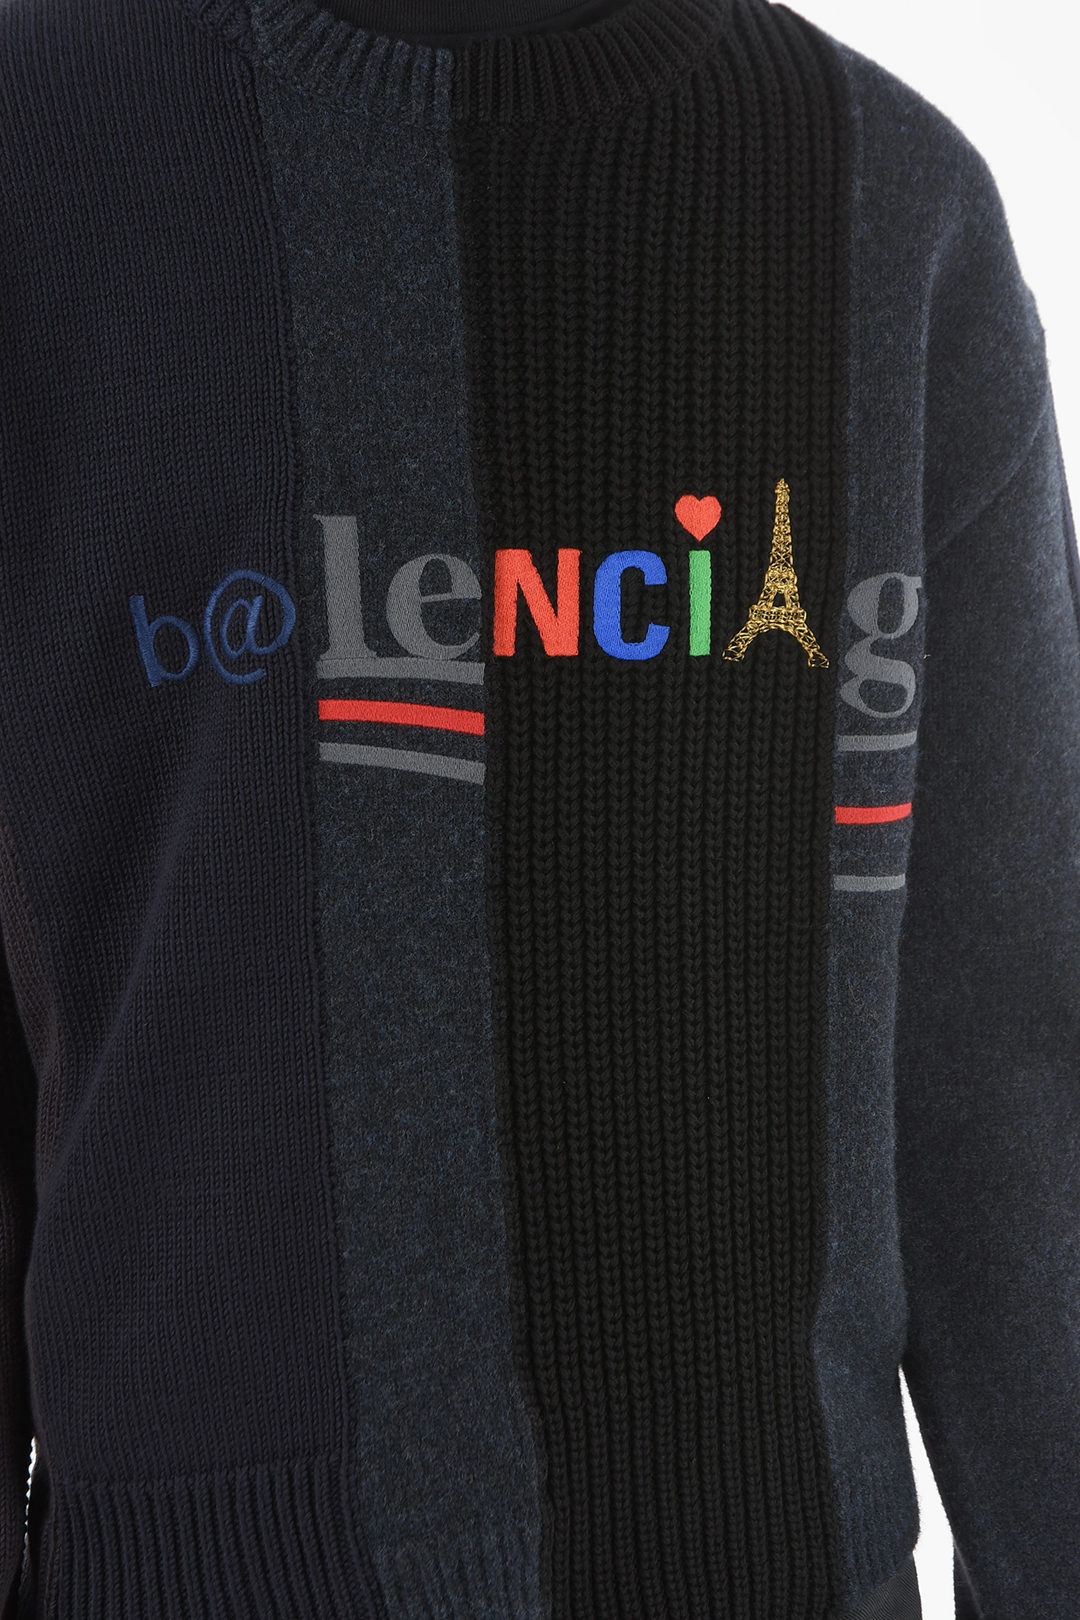 予約販売品】 BALENCIAGA - Balenciaga ニット+セーター BRAIDED SWEATER CABLE-KNIT ニット+セーター  - zenkoh.com